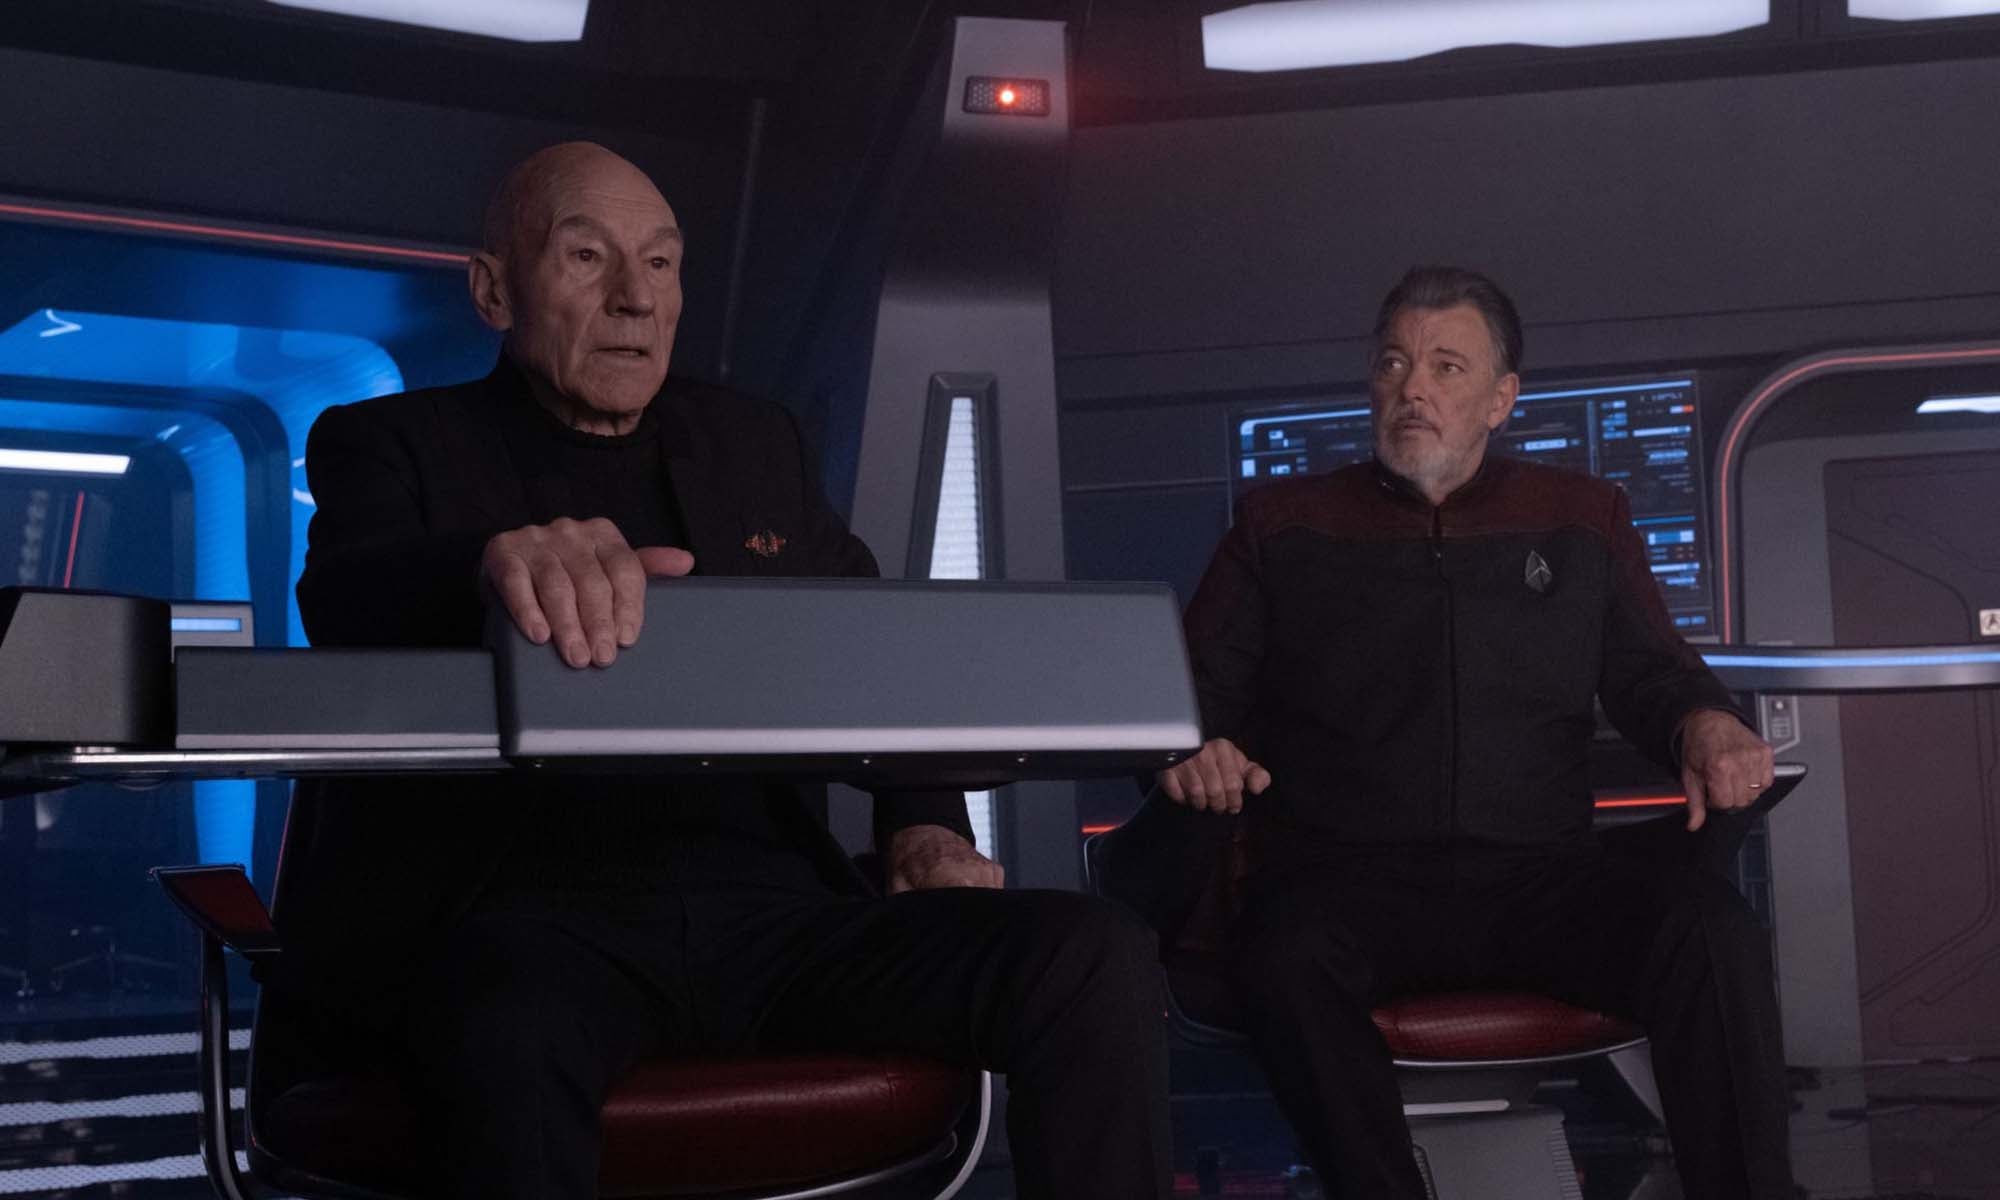 Star Trek: Picard season 3 episode 3 still